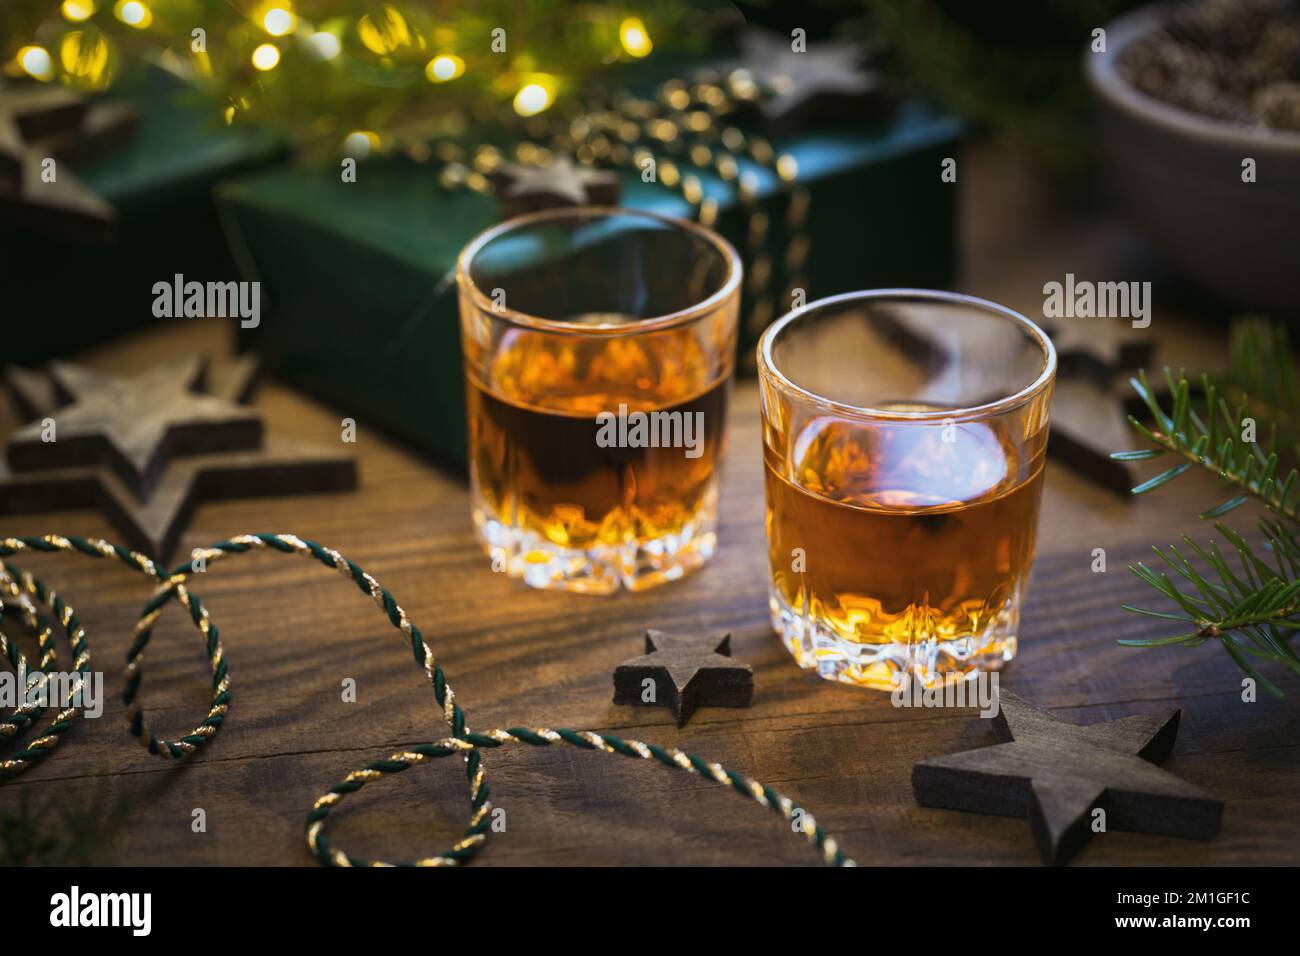 Dos copas de whisky o bourbon con decoración navideña Foto de stock